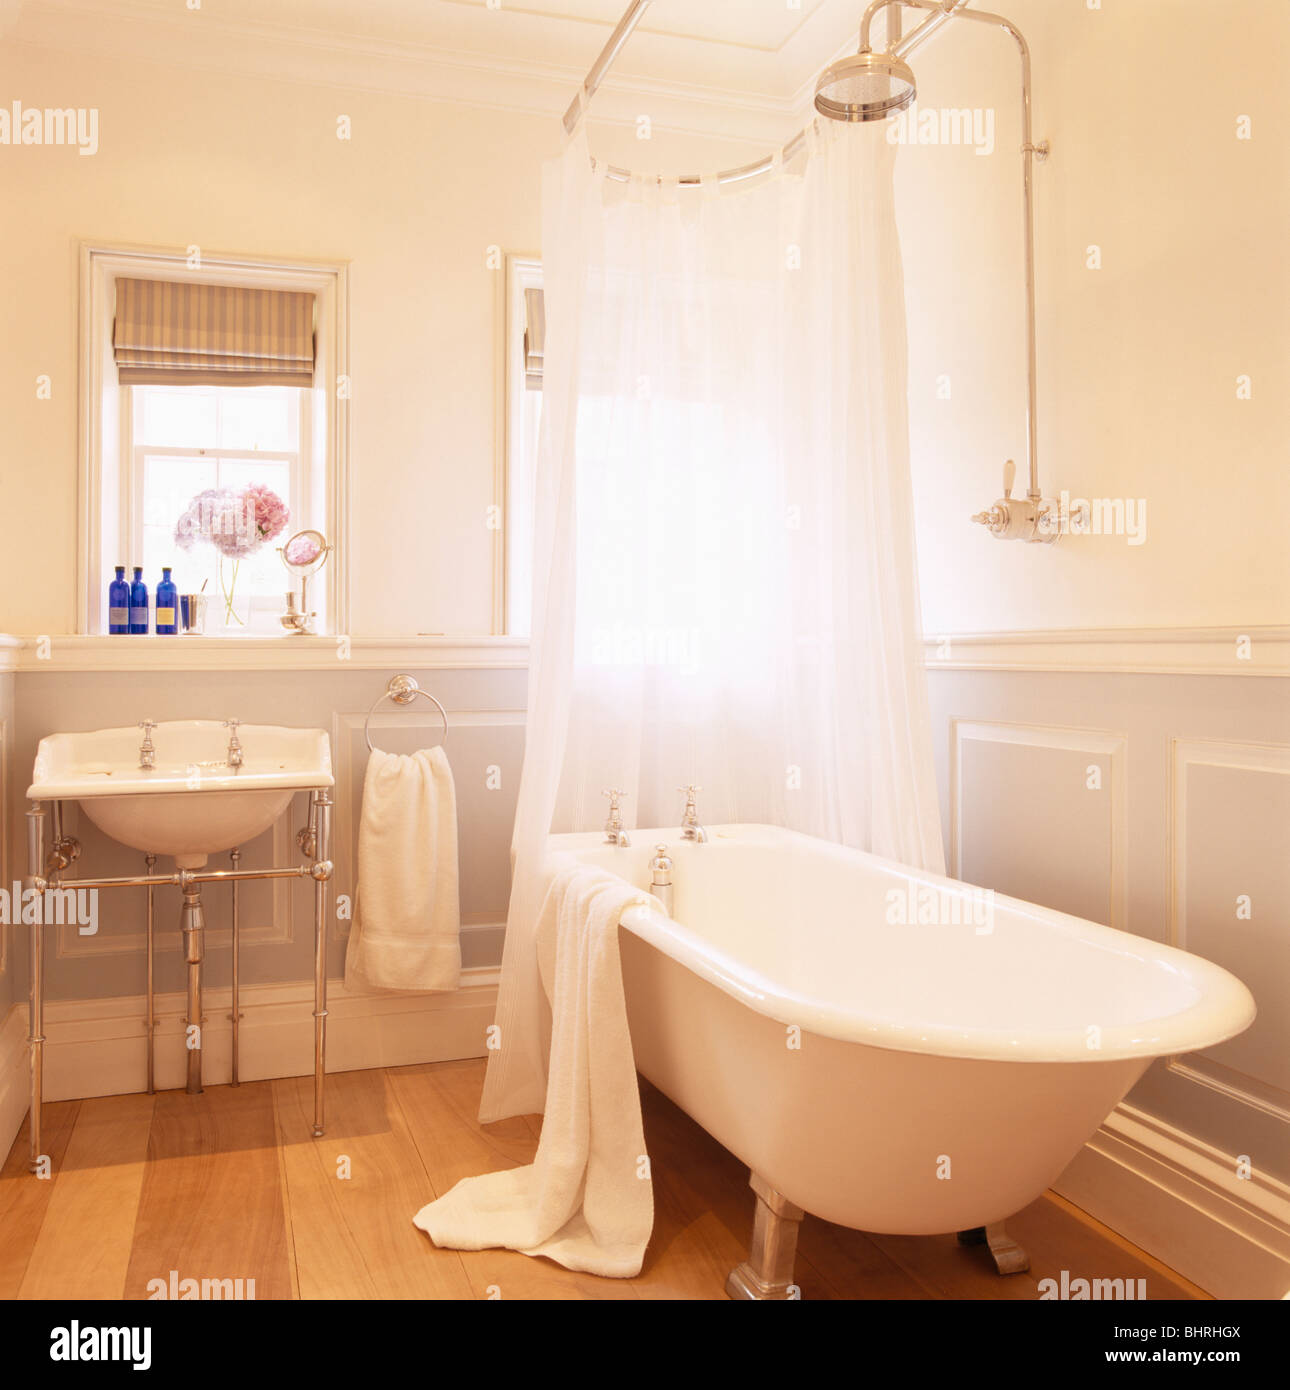 Rideaux de douche blanc sur une baignoire avec fixation murale en acier  inoxydable douche dans salle de bains Maison blanche Photo Stock - Alamy